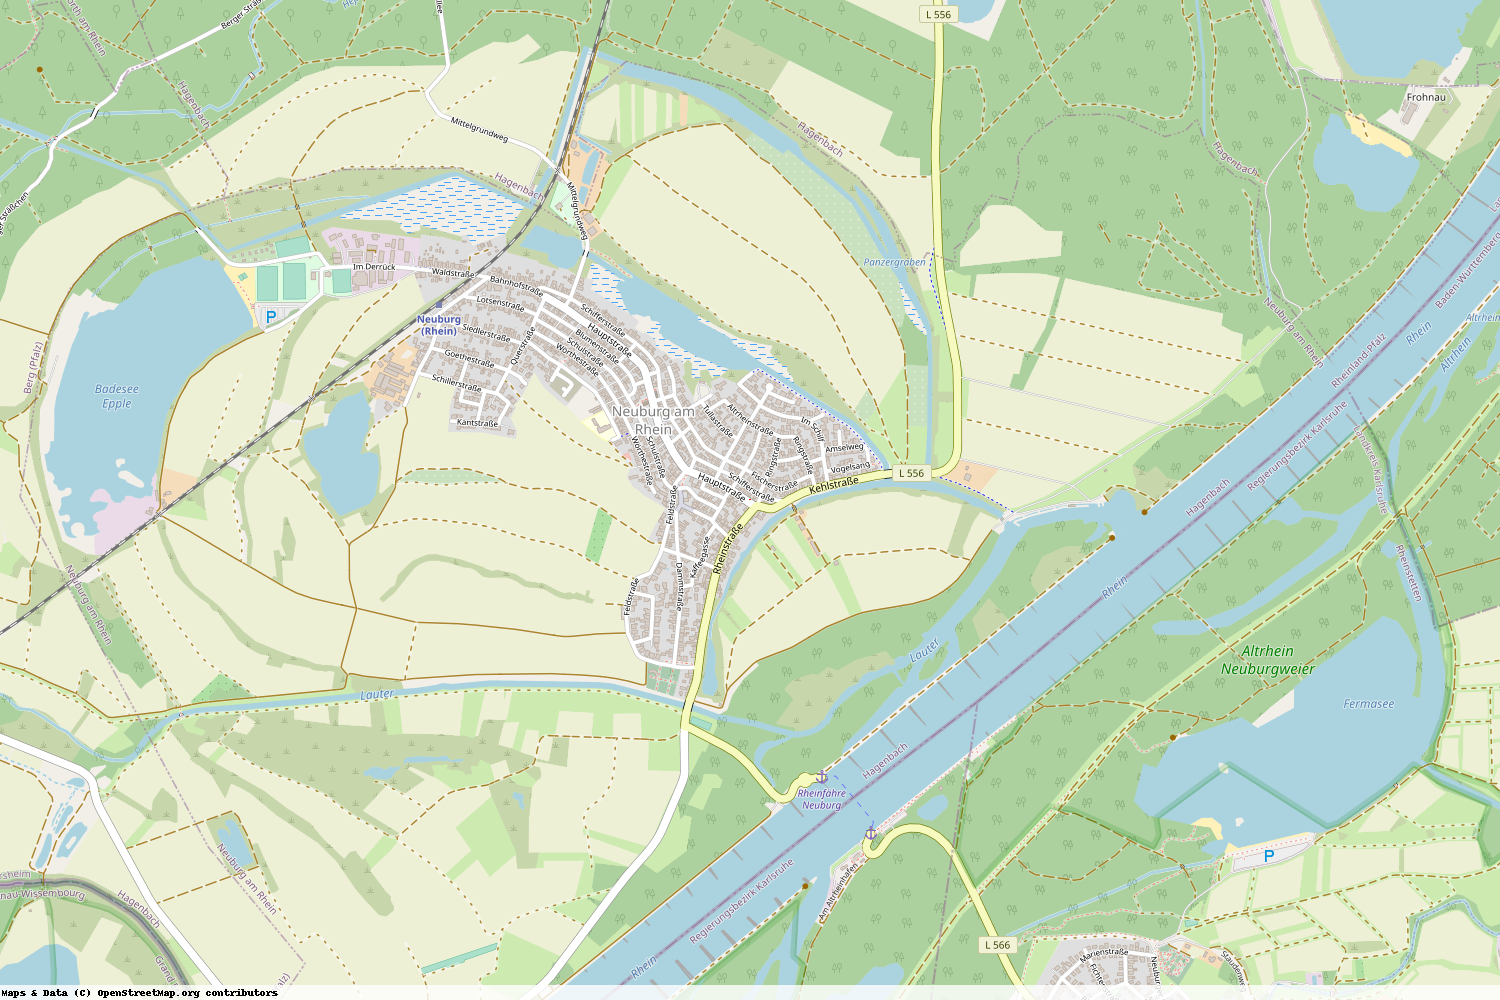 Ist gerade Stromausfall in Rheinland-Pfalz - Germersheim - Neuburg am Rhein?